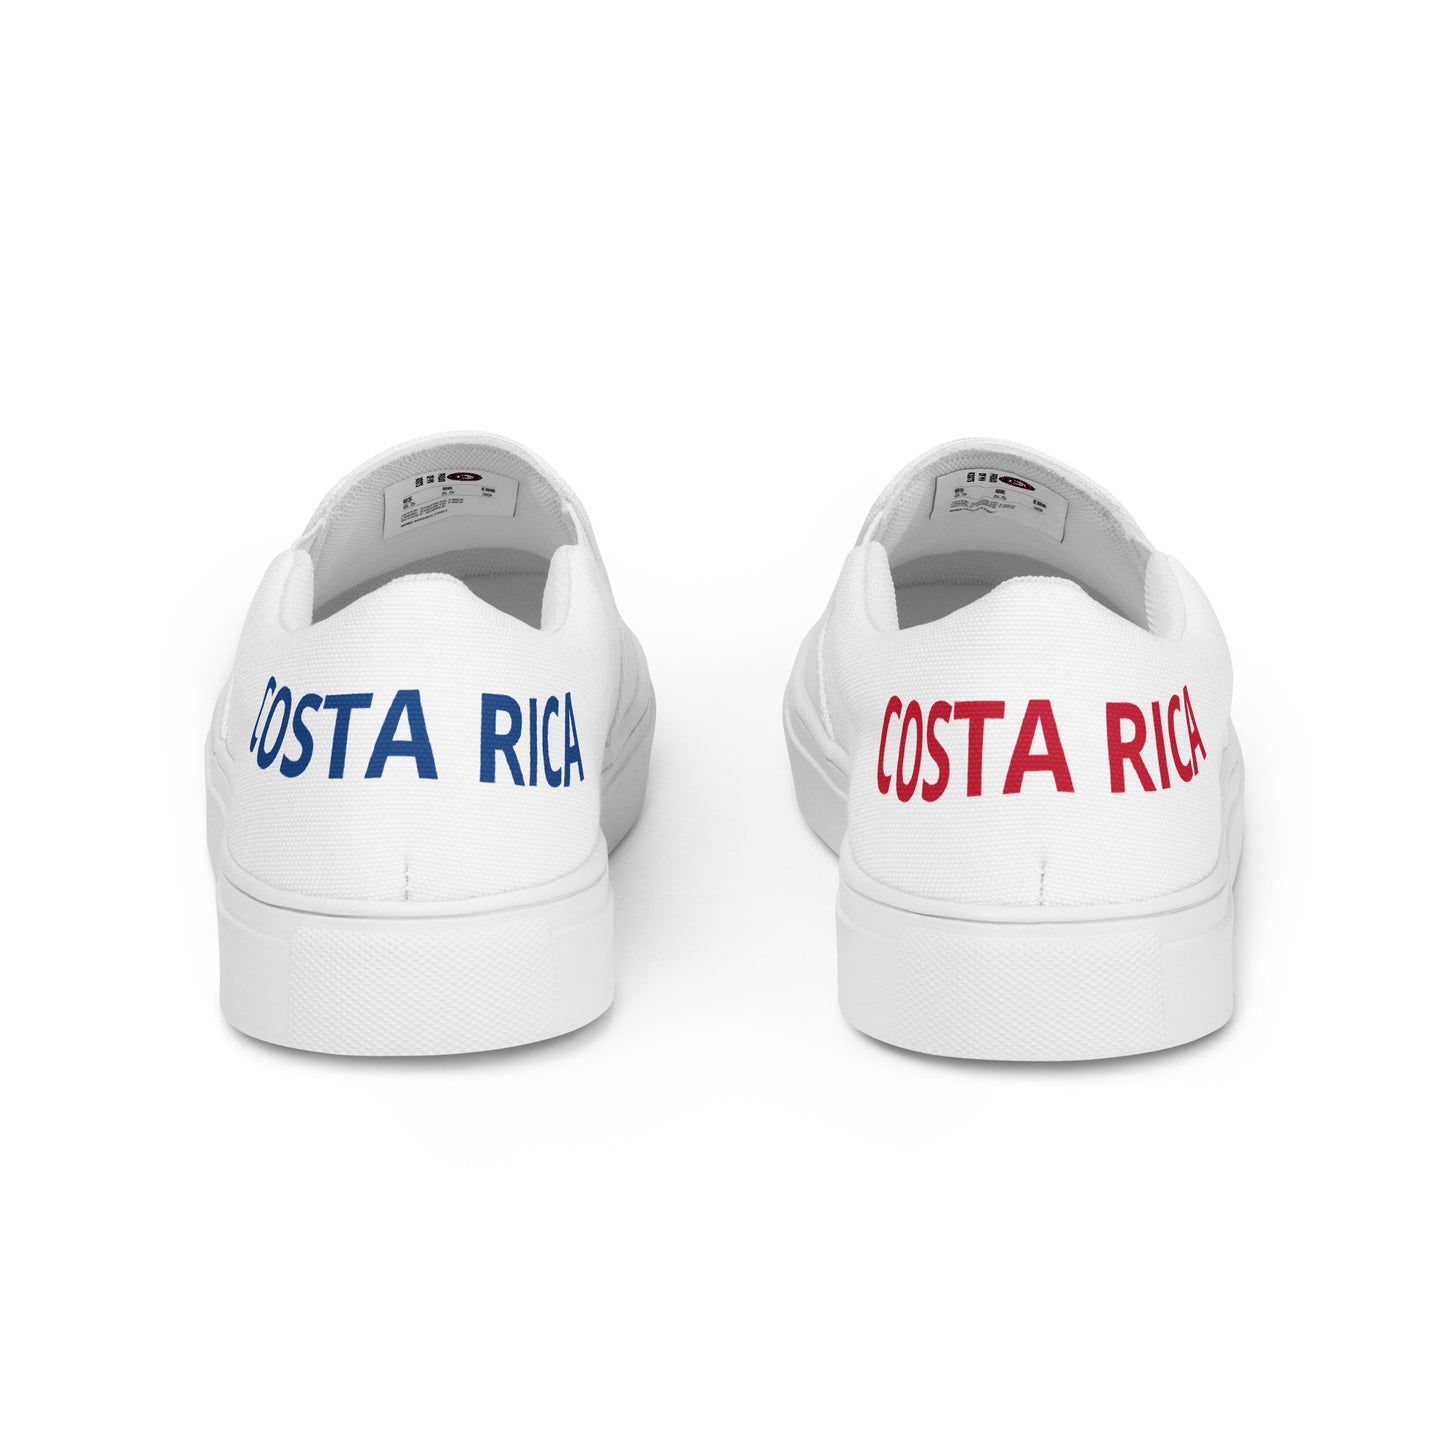 Costa Rica - Men - White - Slip-on shoes